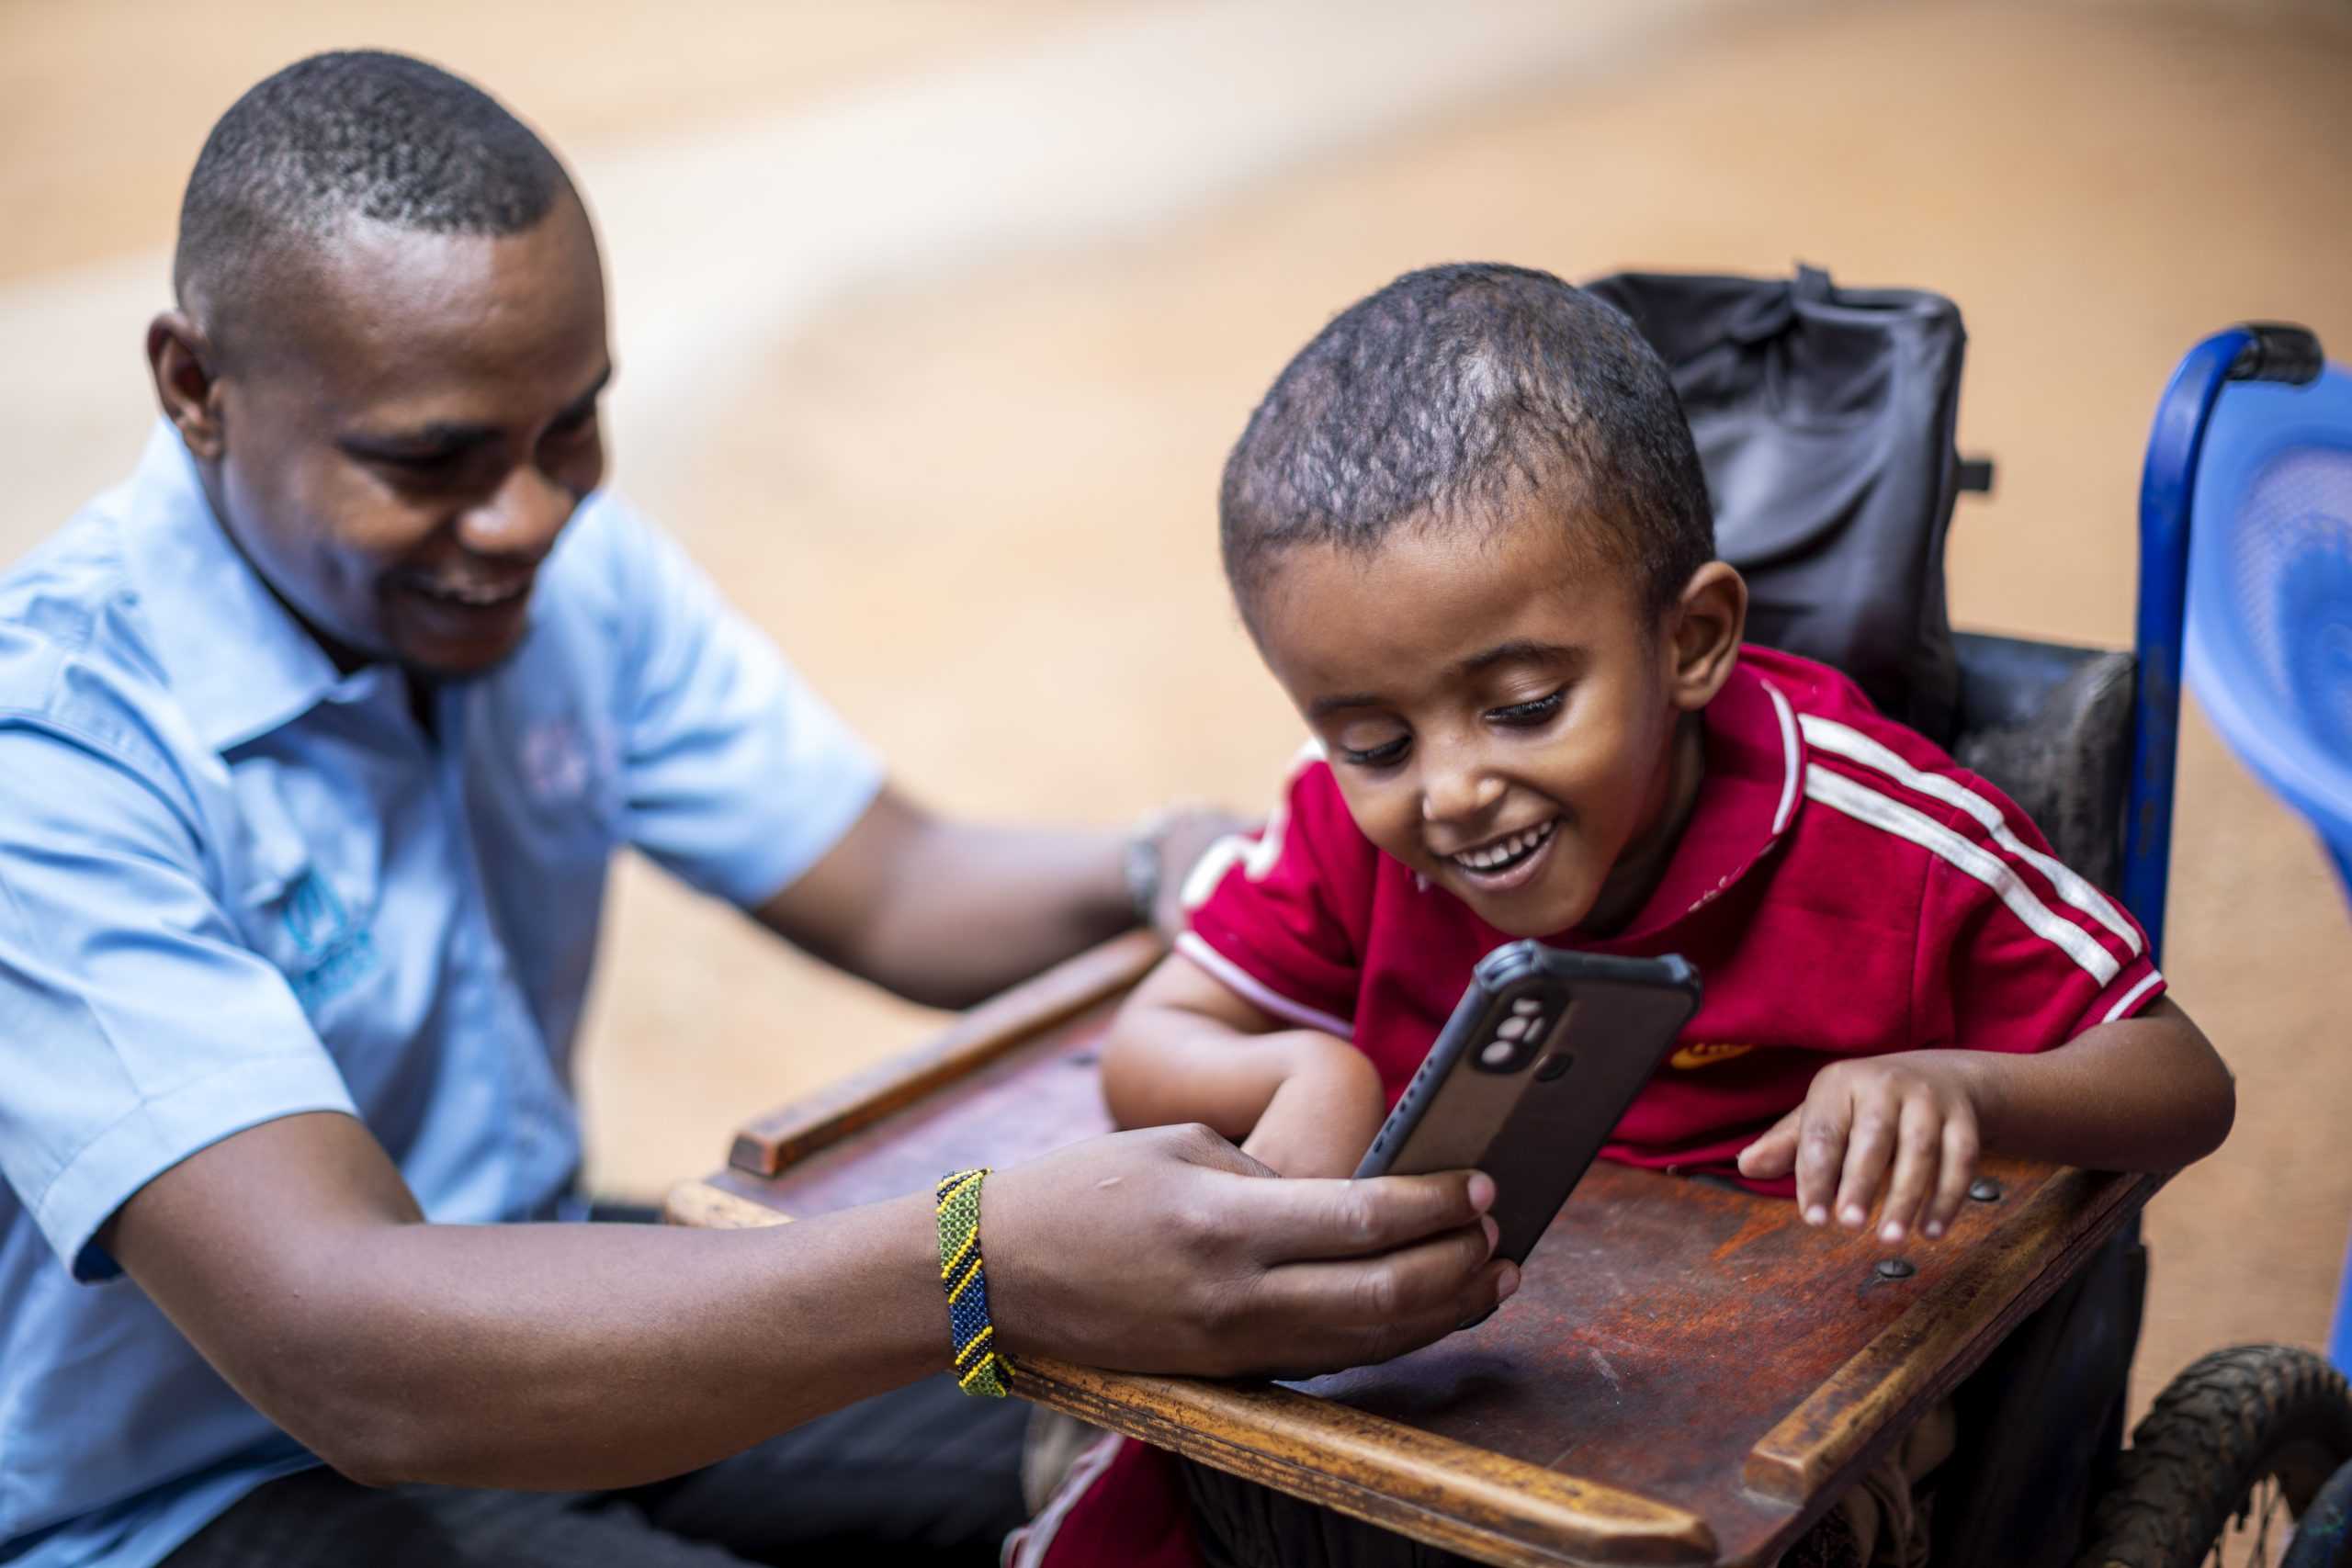 En man visar en mobiltelefon för ett barn. Båda skrattar.